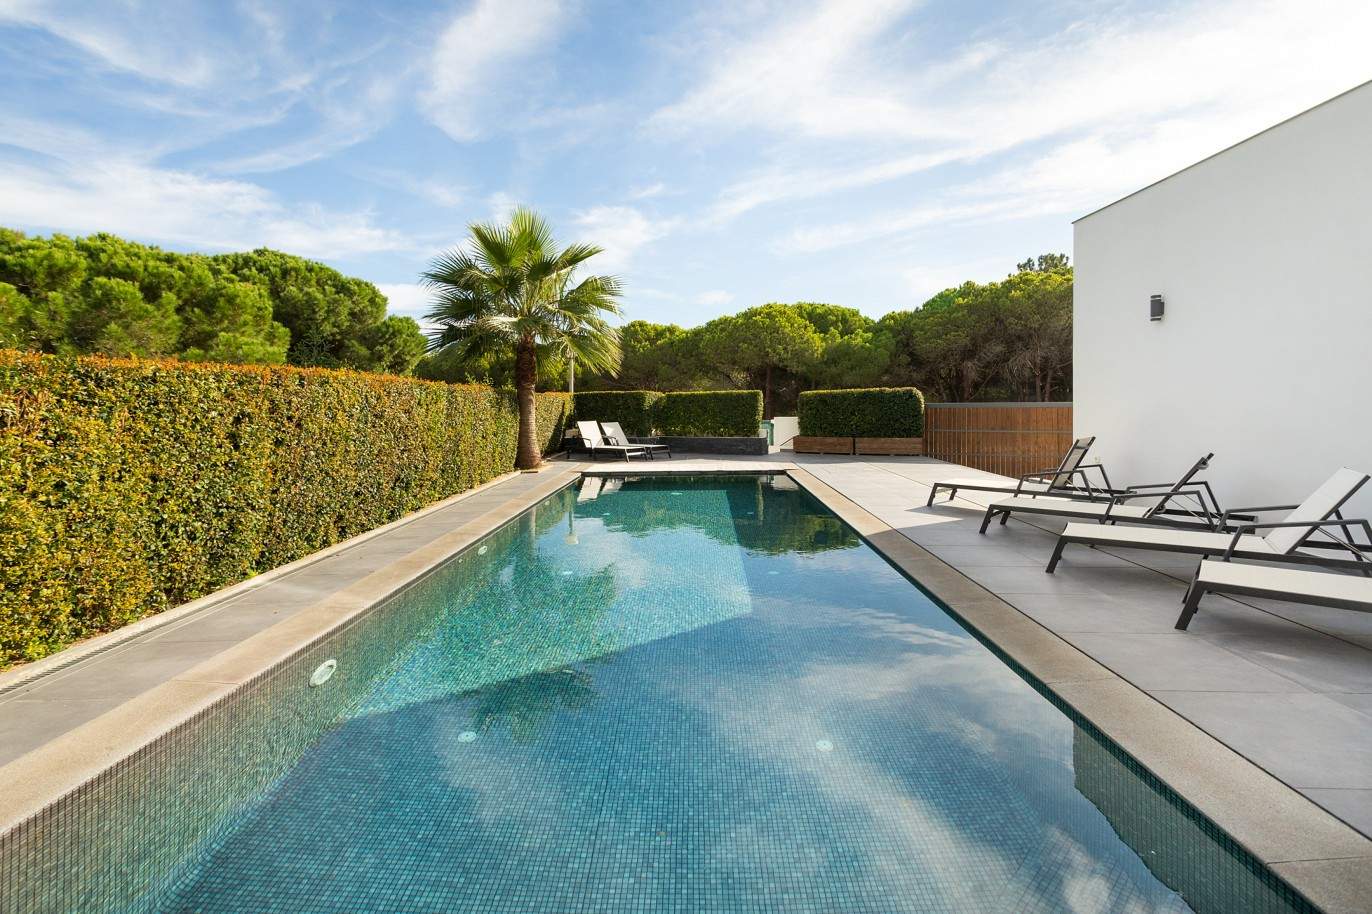 4 Bedroom Villa with swimming pool for sale in Vale do Lobo, Algarve_211207